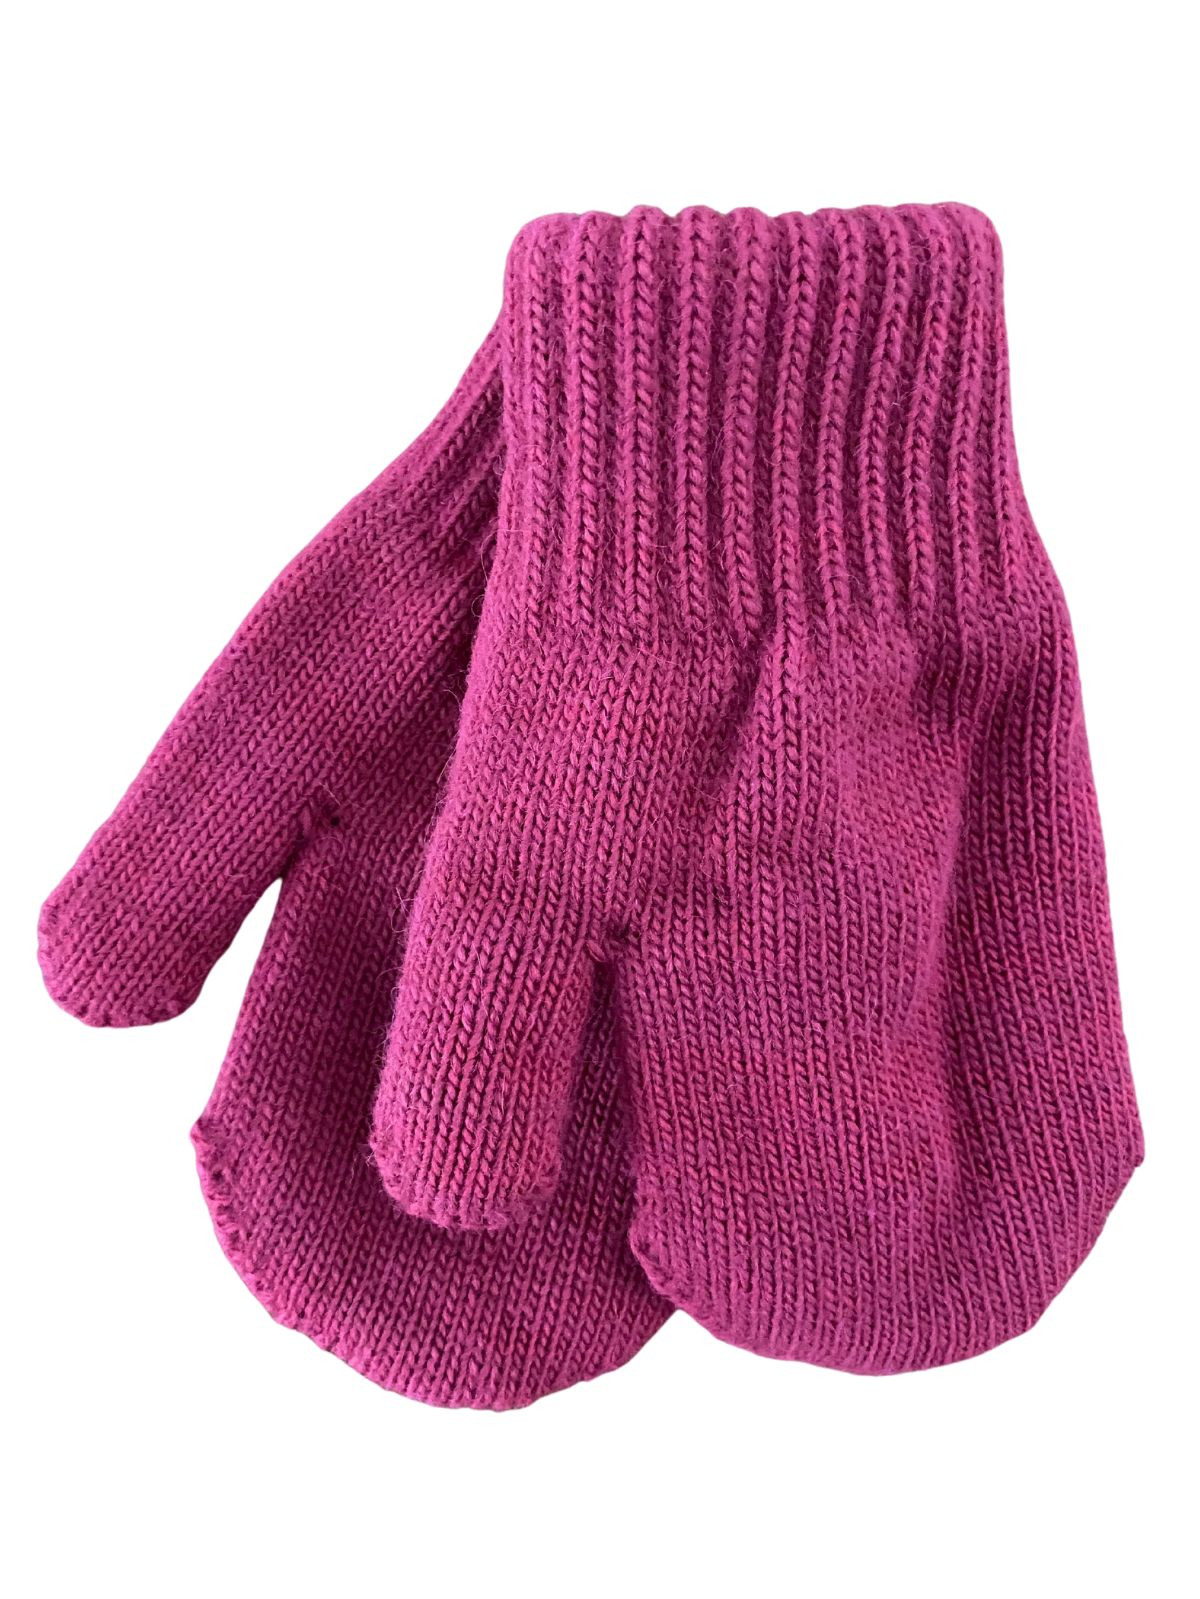 Mitaines tricotés pour enfant 3-5 ans, Basic35_fuschia